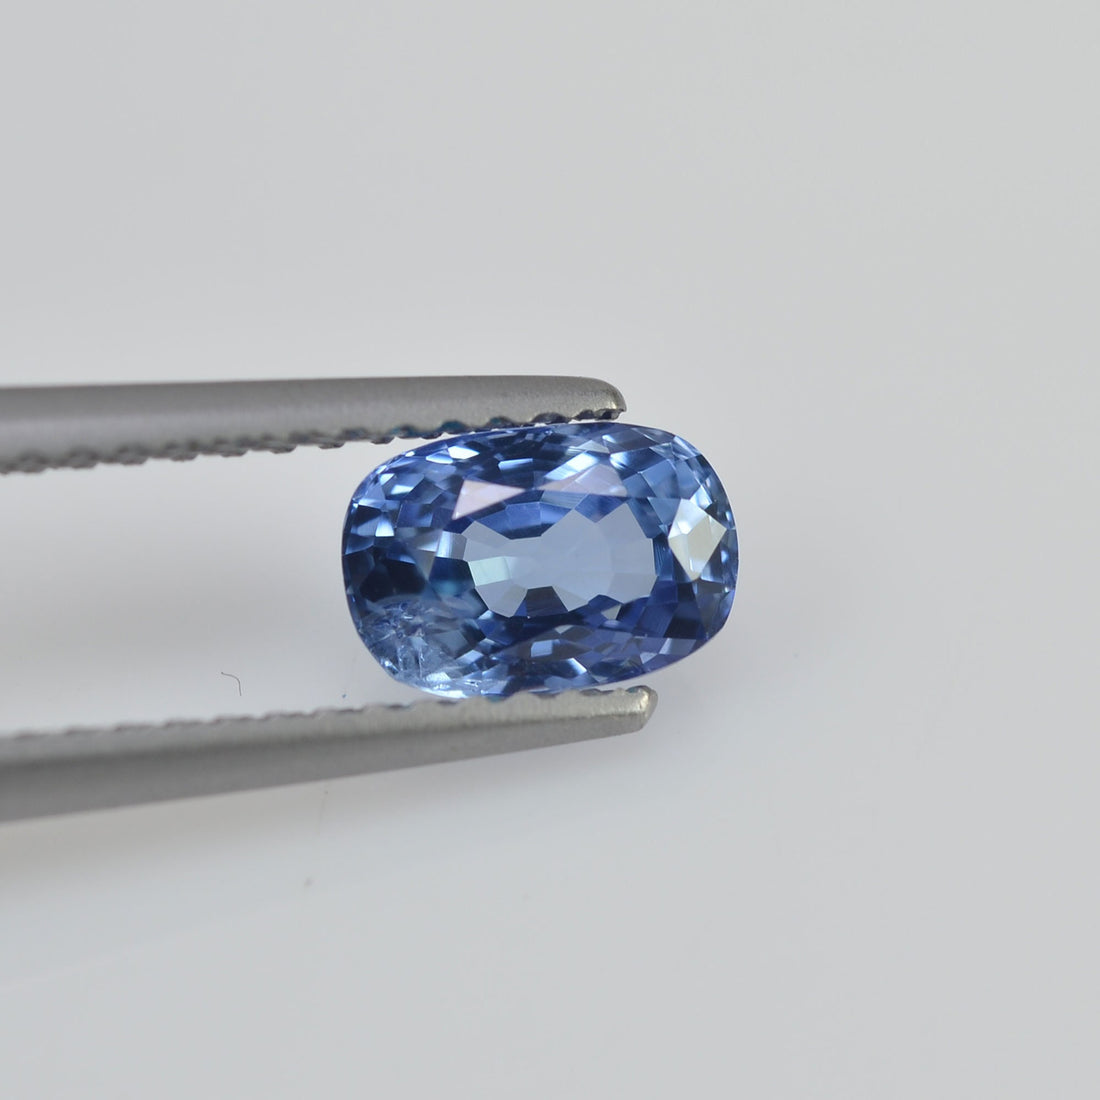 1.11 cts   Natural Blue Sapphire Loose Gemstone Cushion Cut